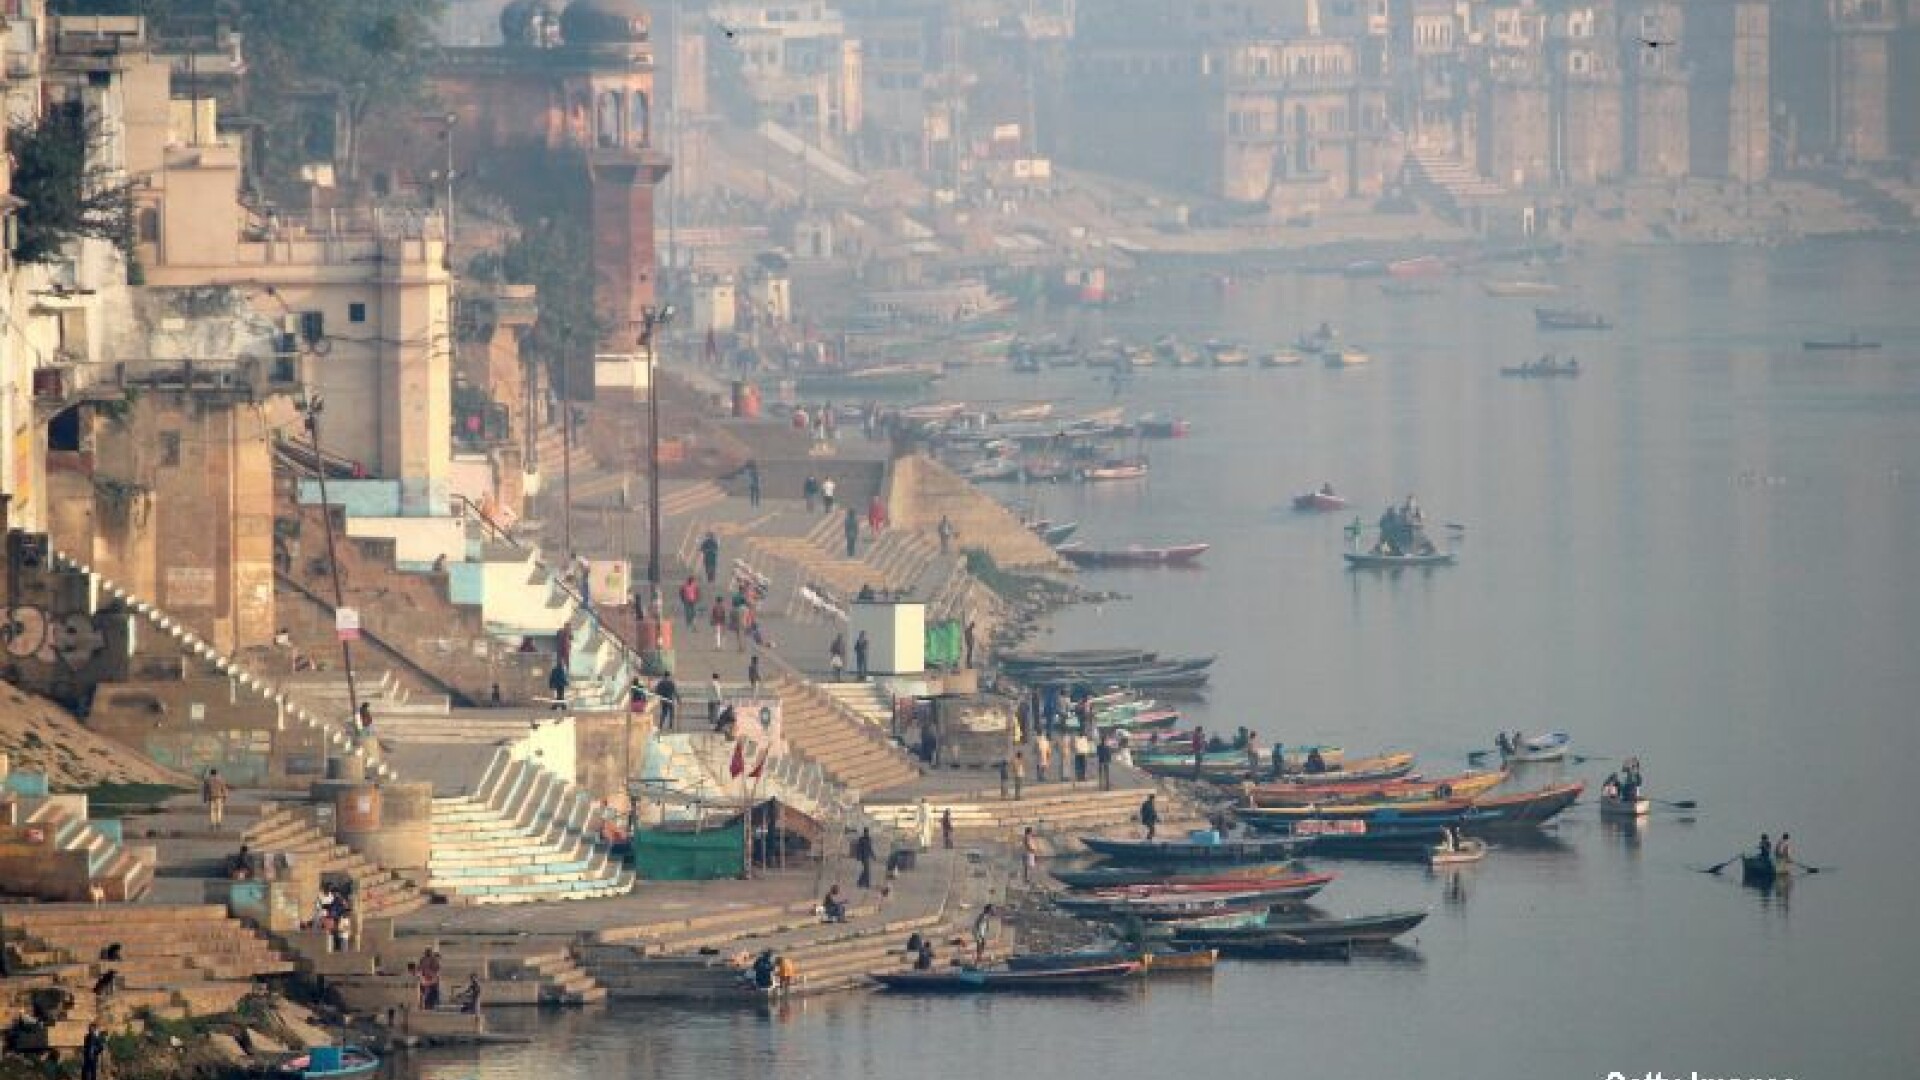 raul Gange